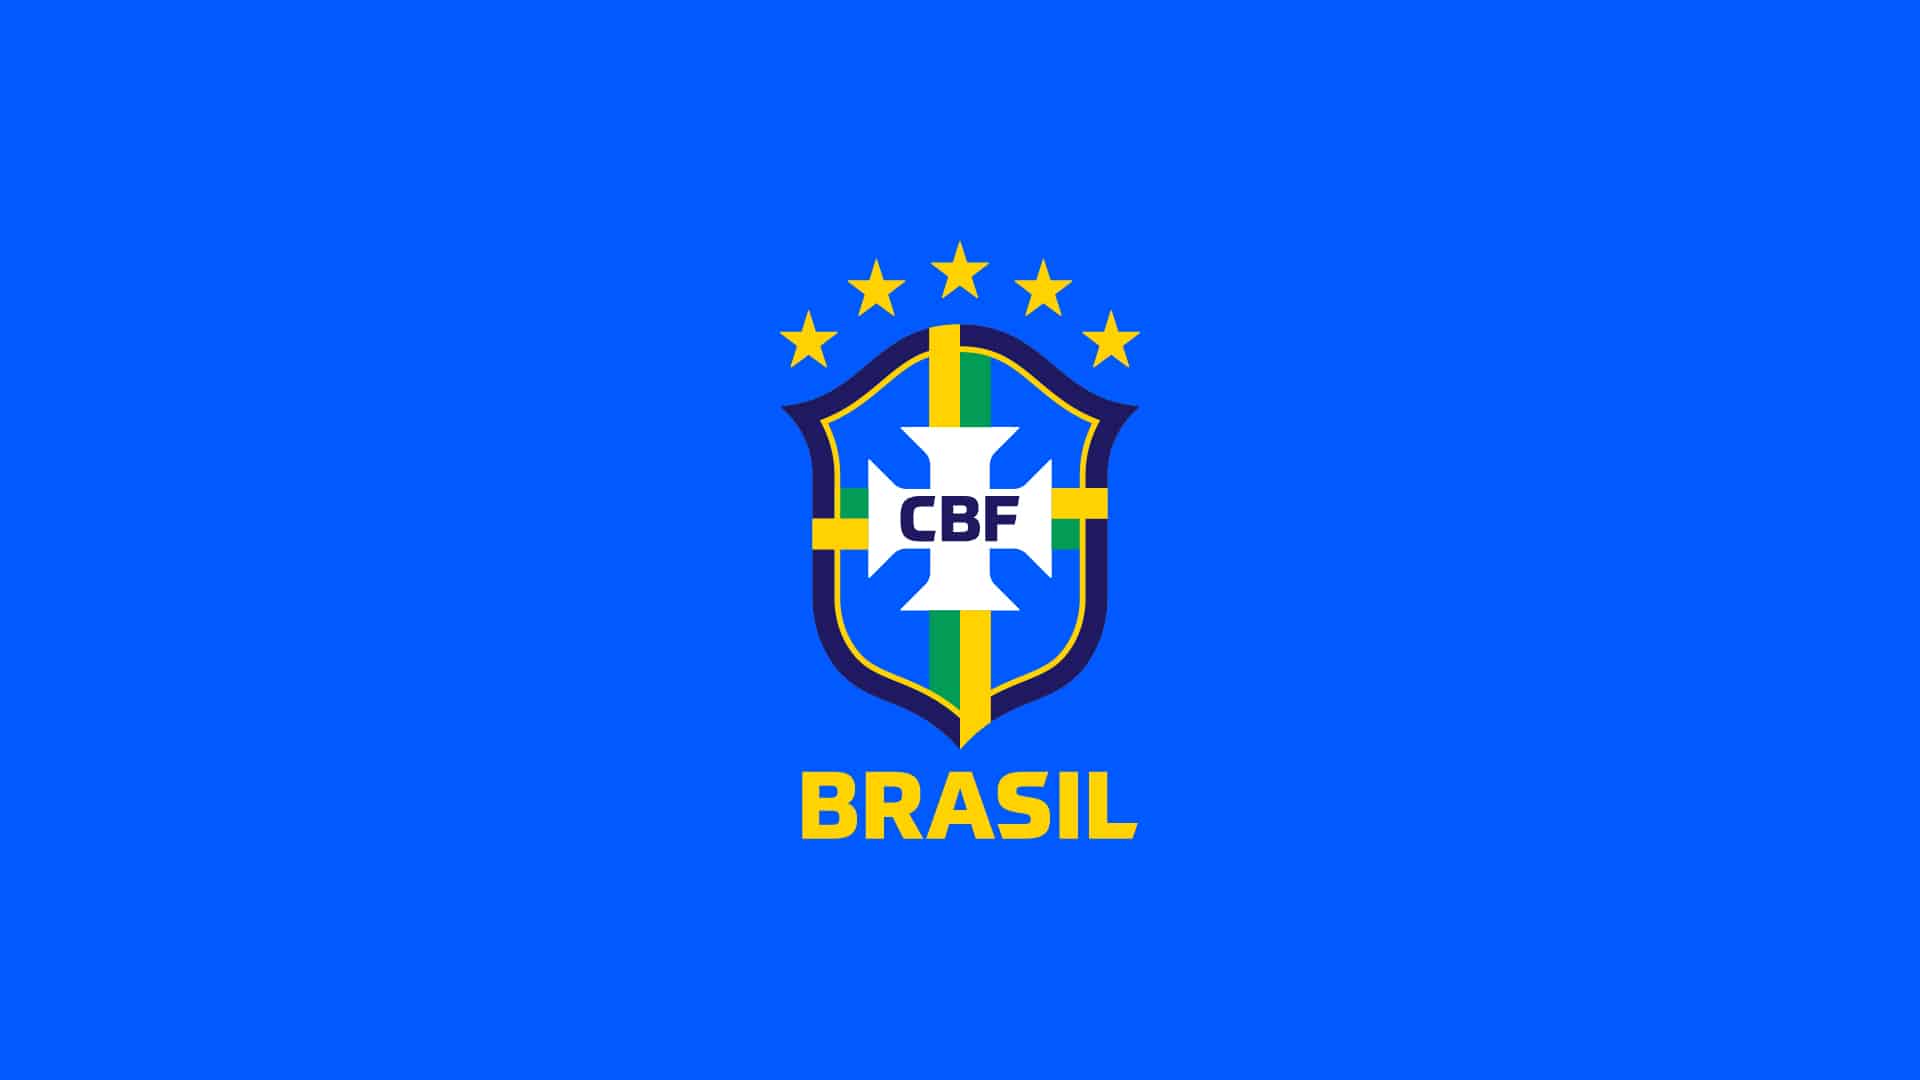 Seleção Brasileira de Futebol: O Esquadrão de Ouro que Encanta o Mundo